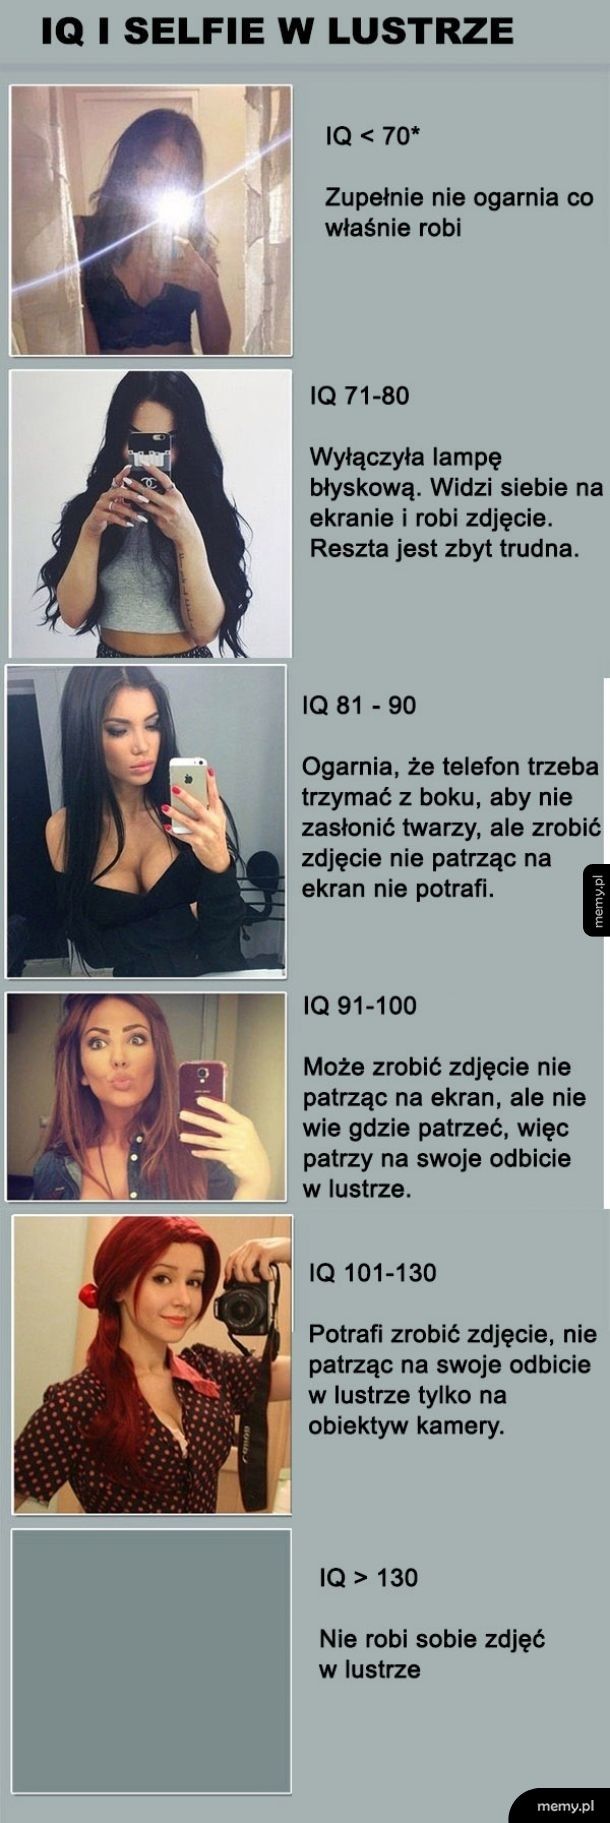 IQ i selfie